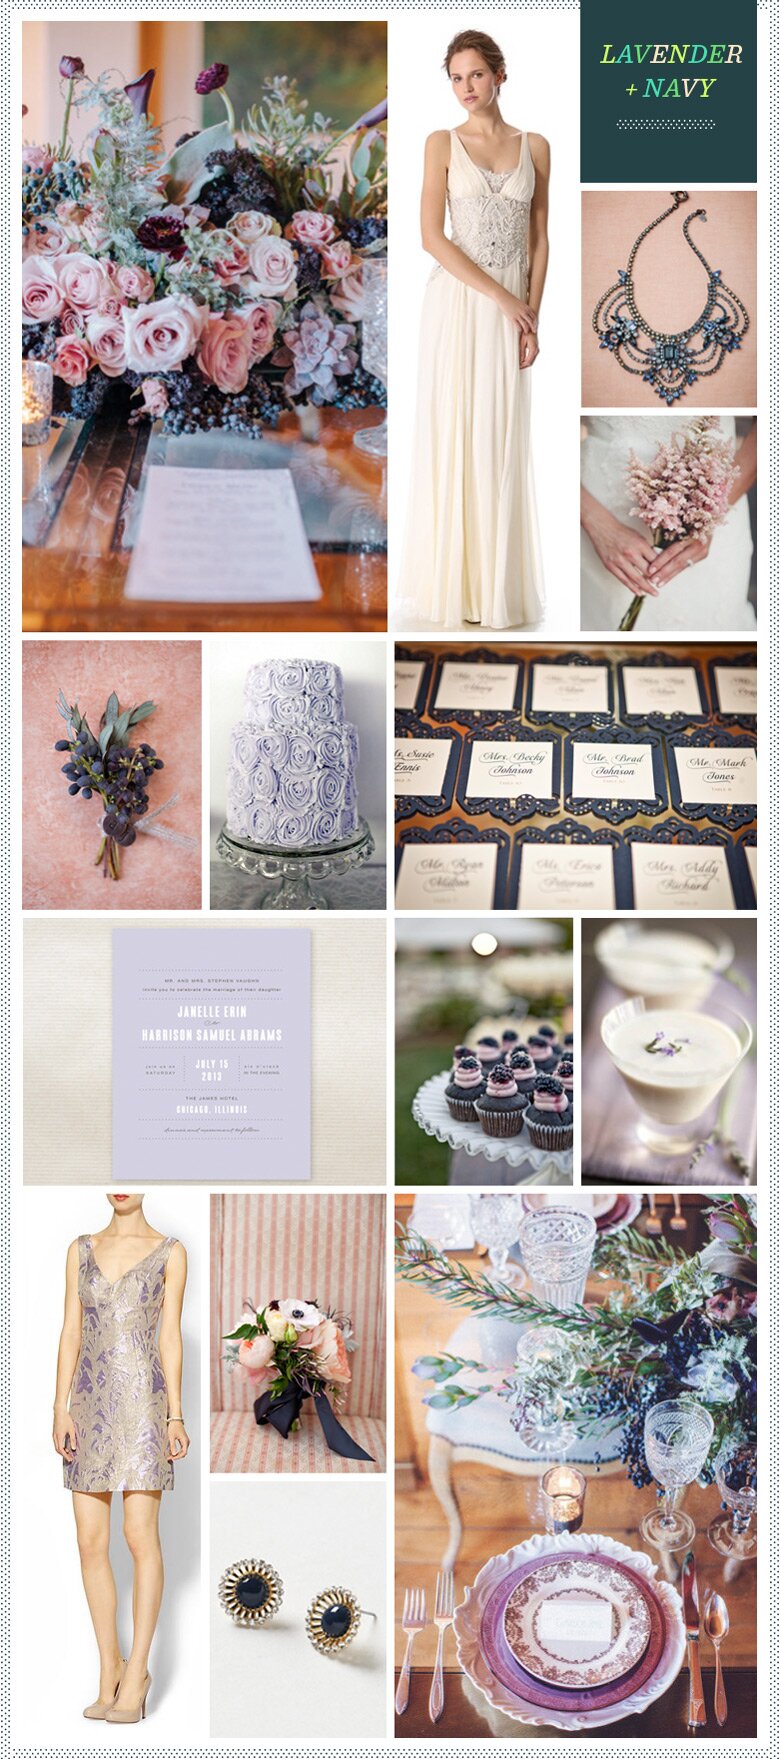 REVEL: Lavender + Navy Wedding Inspiration